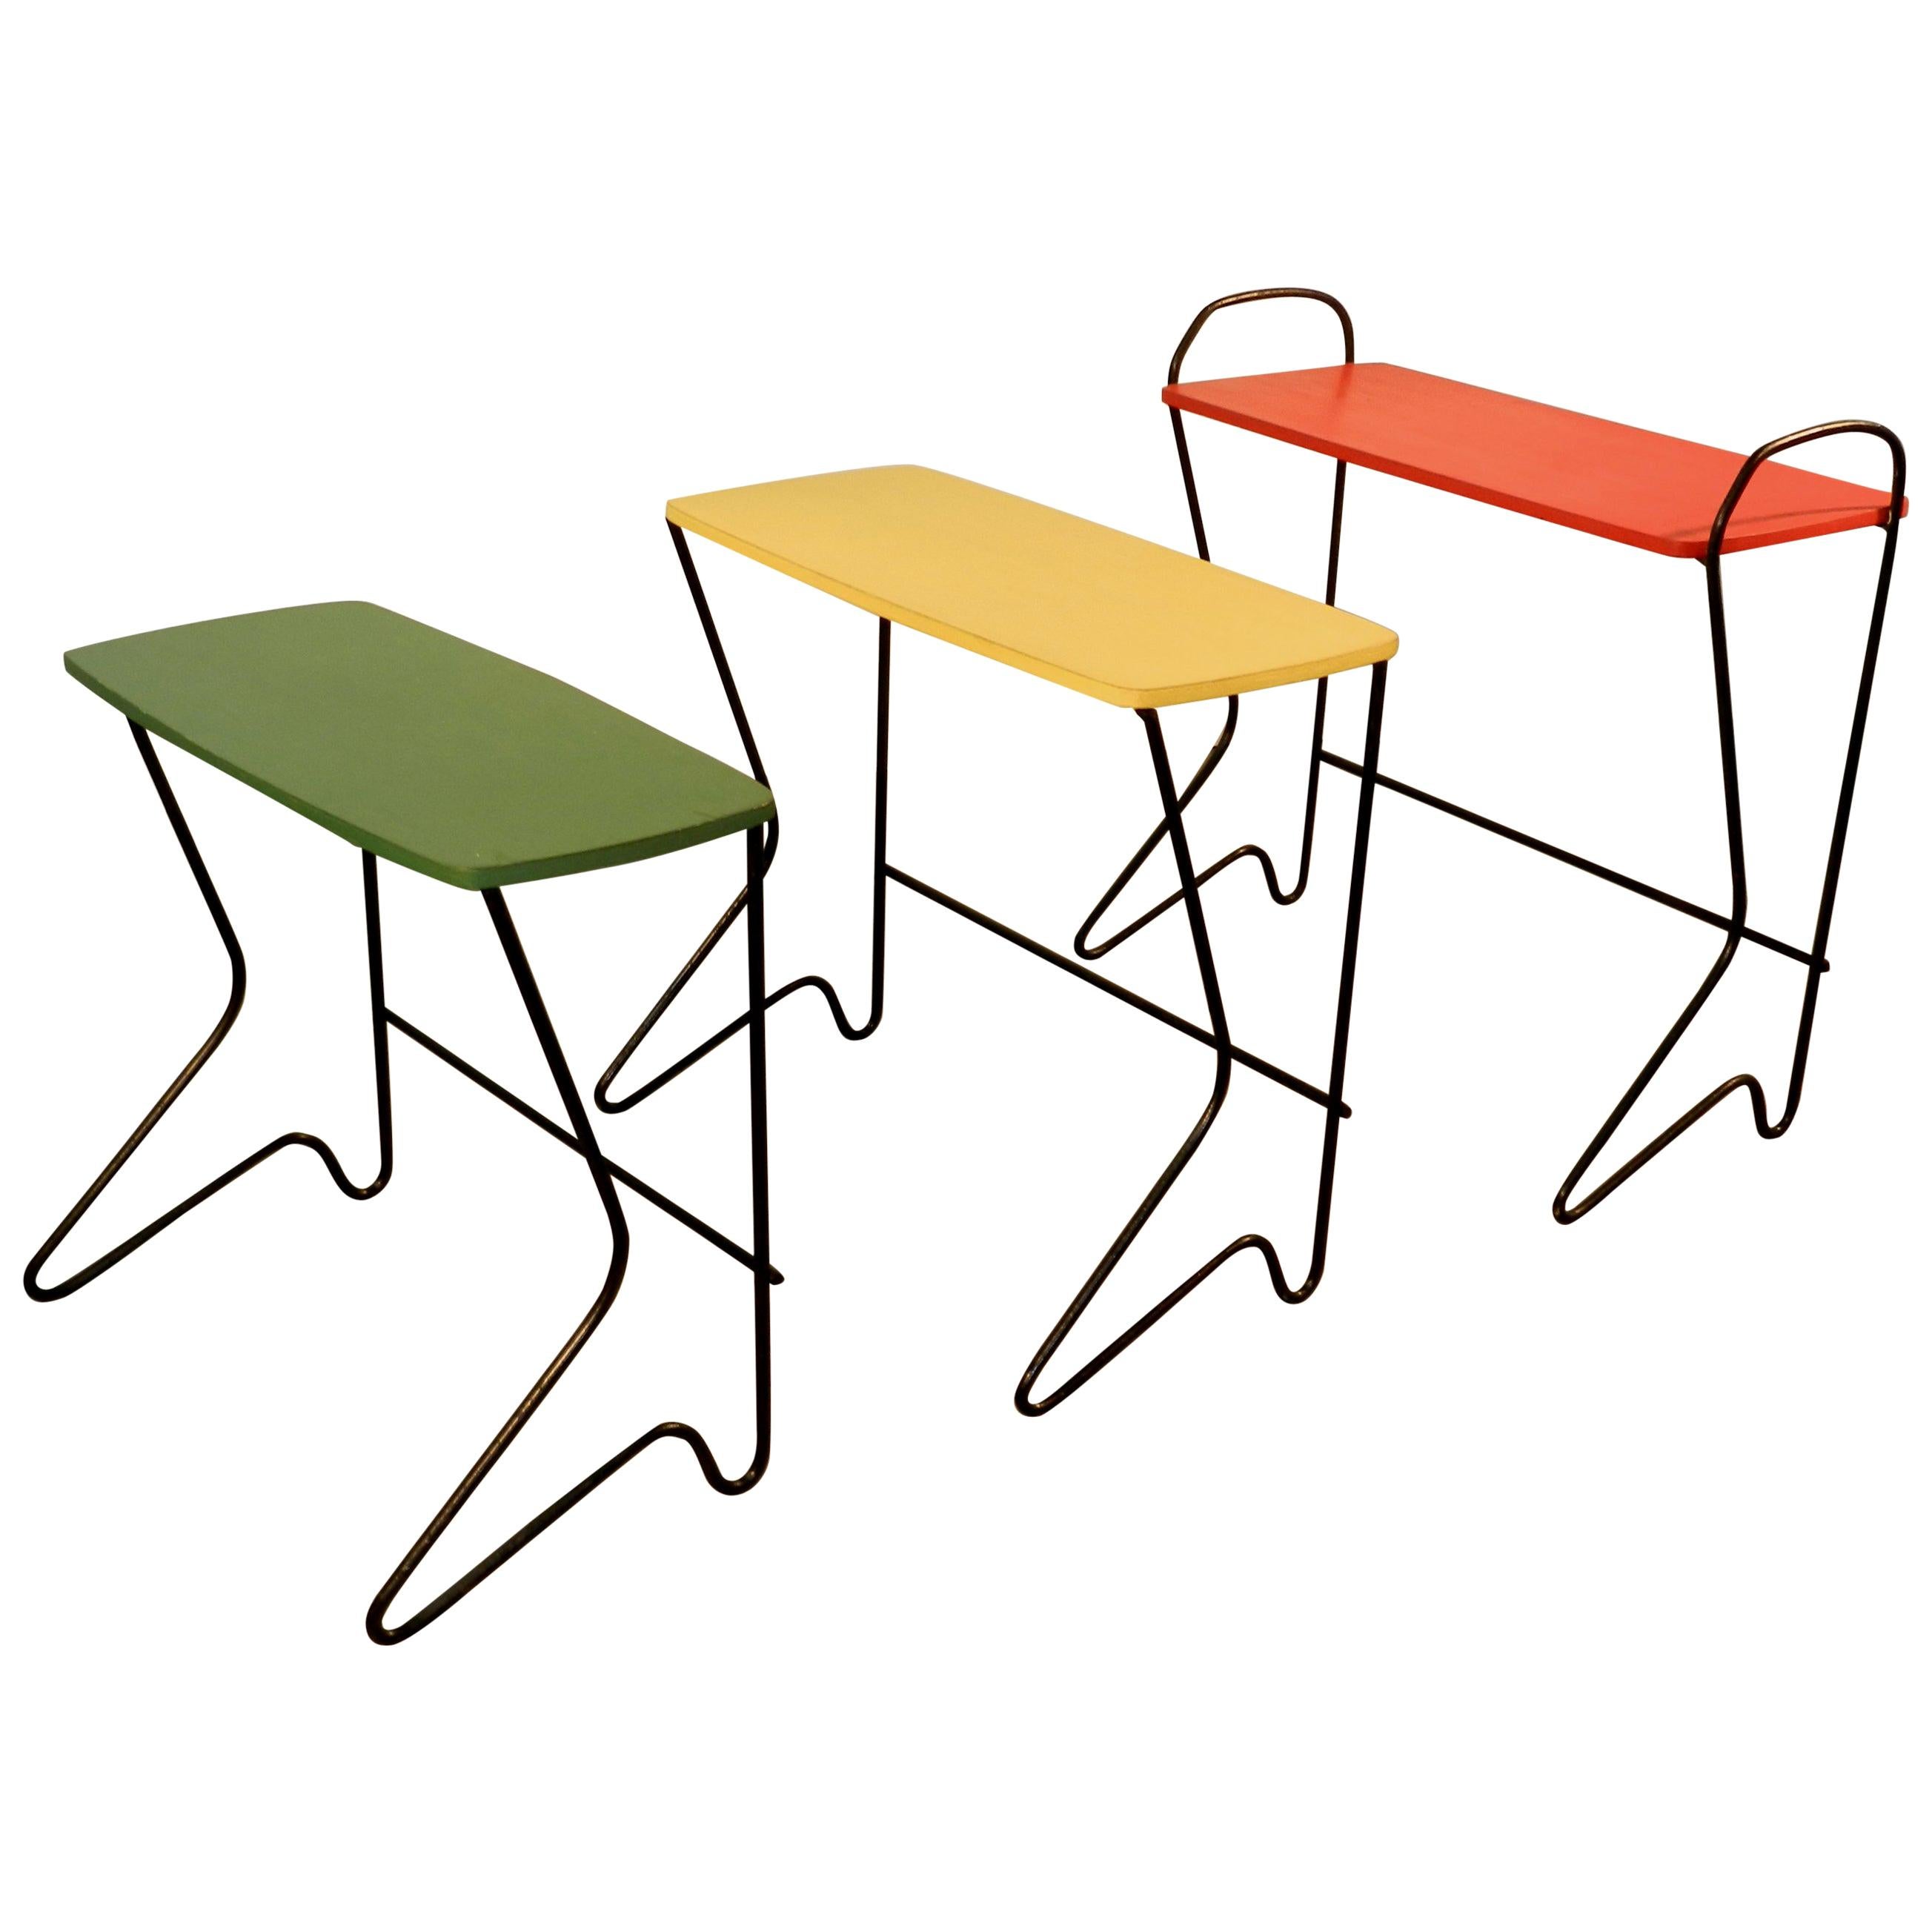 Design belge, ensemble de trois tables gigognes en métal et bois laqué, vers 1950